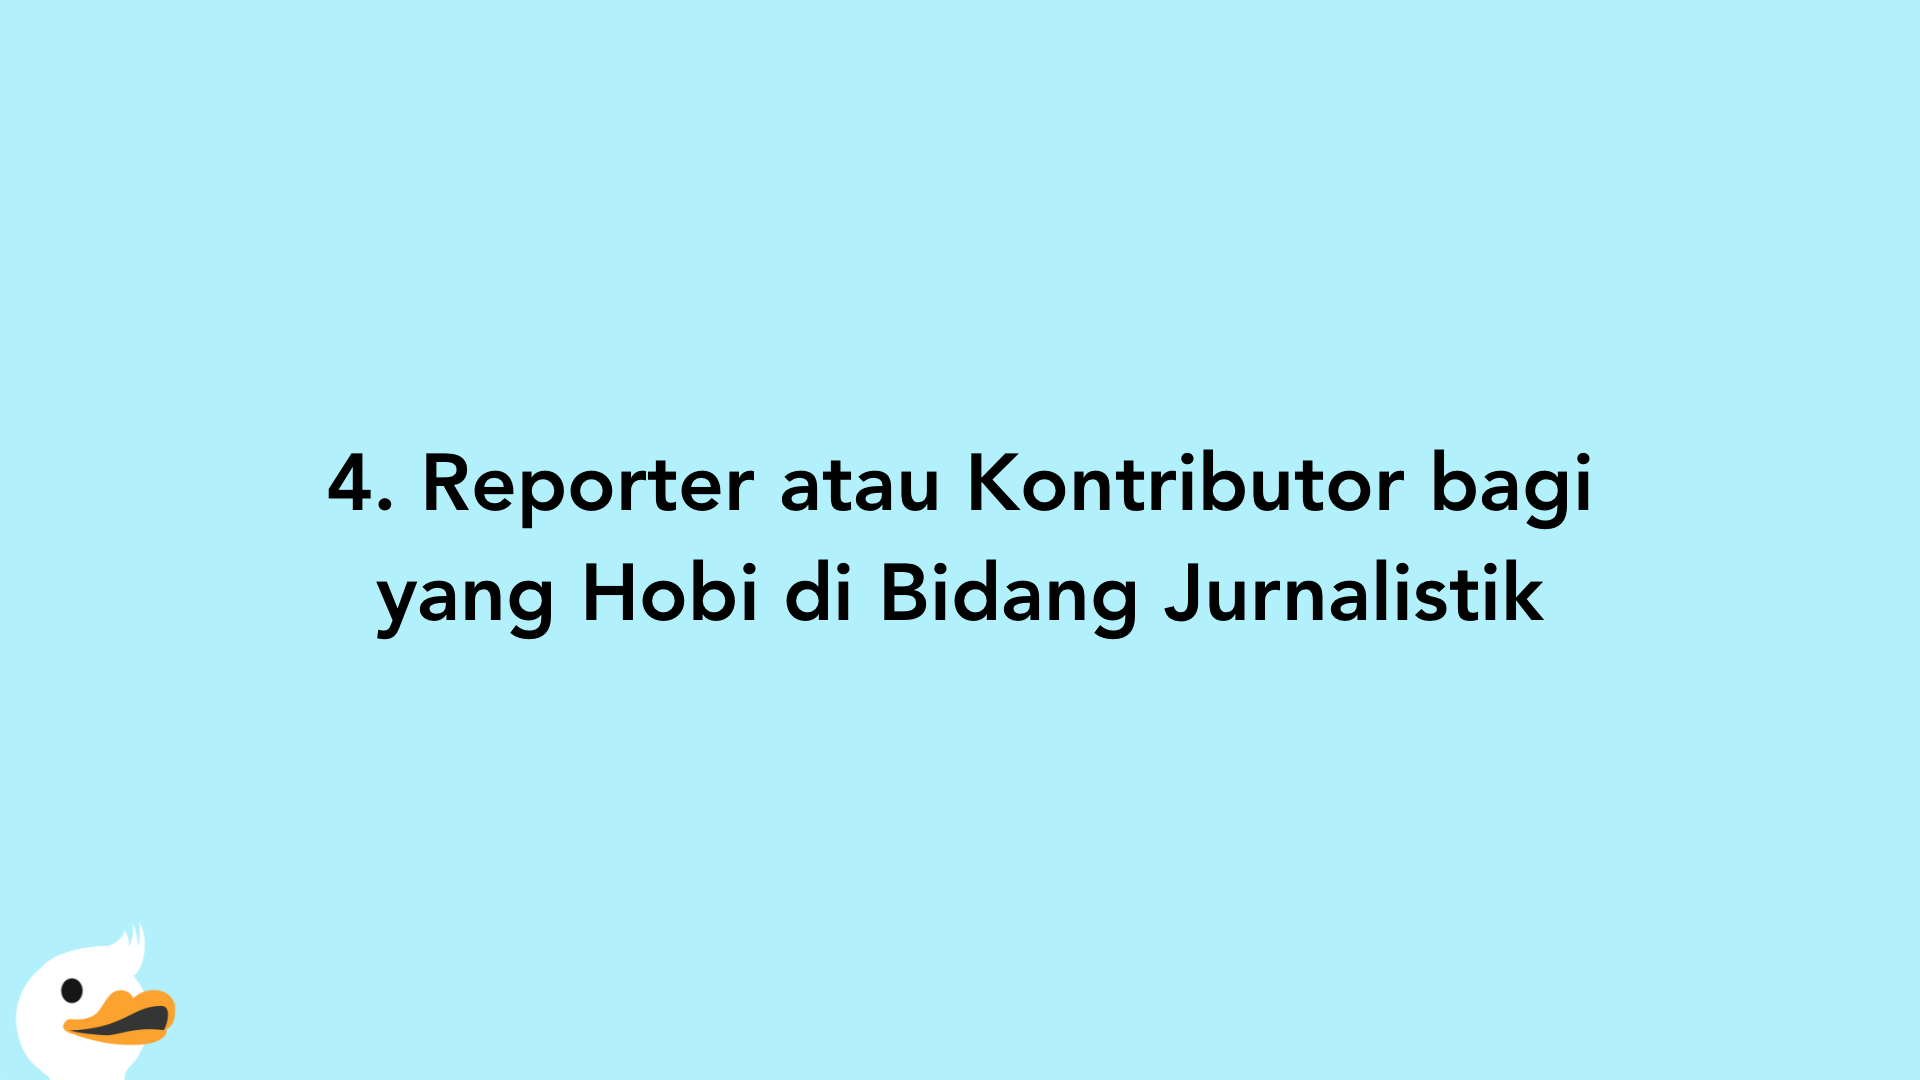 4. Reporter atau Kontributor bagi yang Hobi di Bidang Jurnalistik